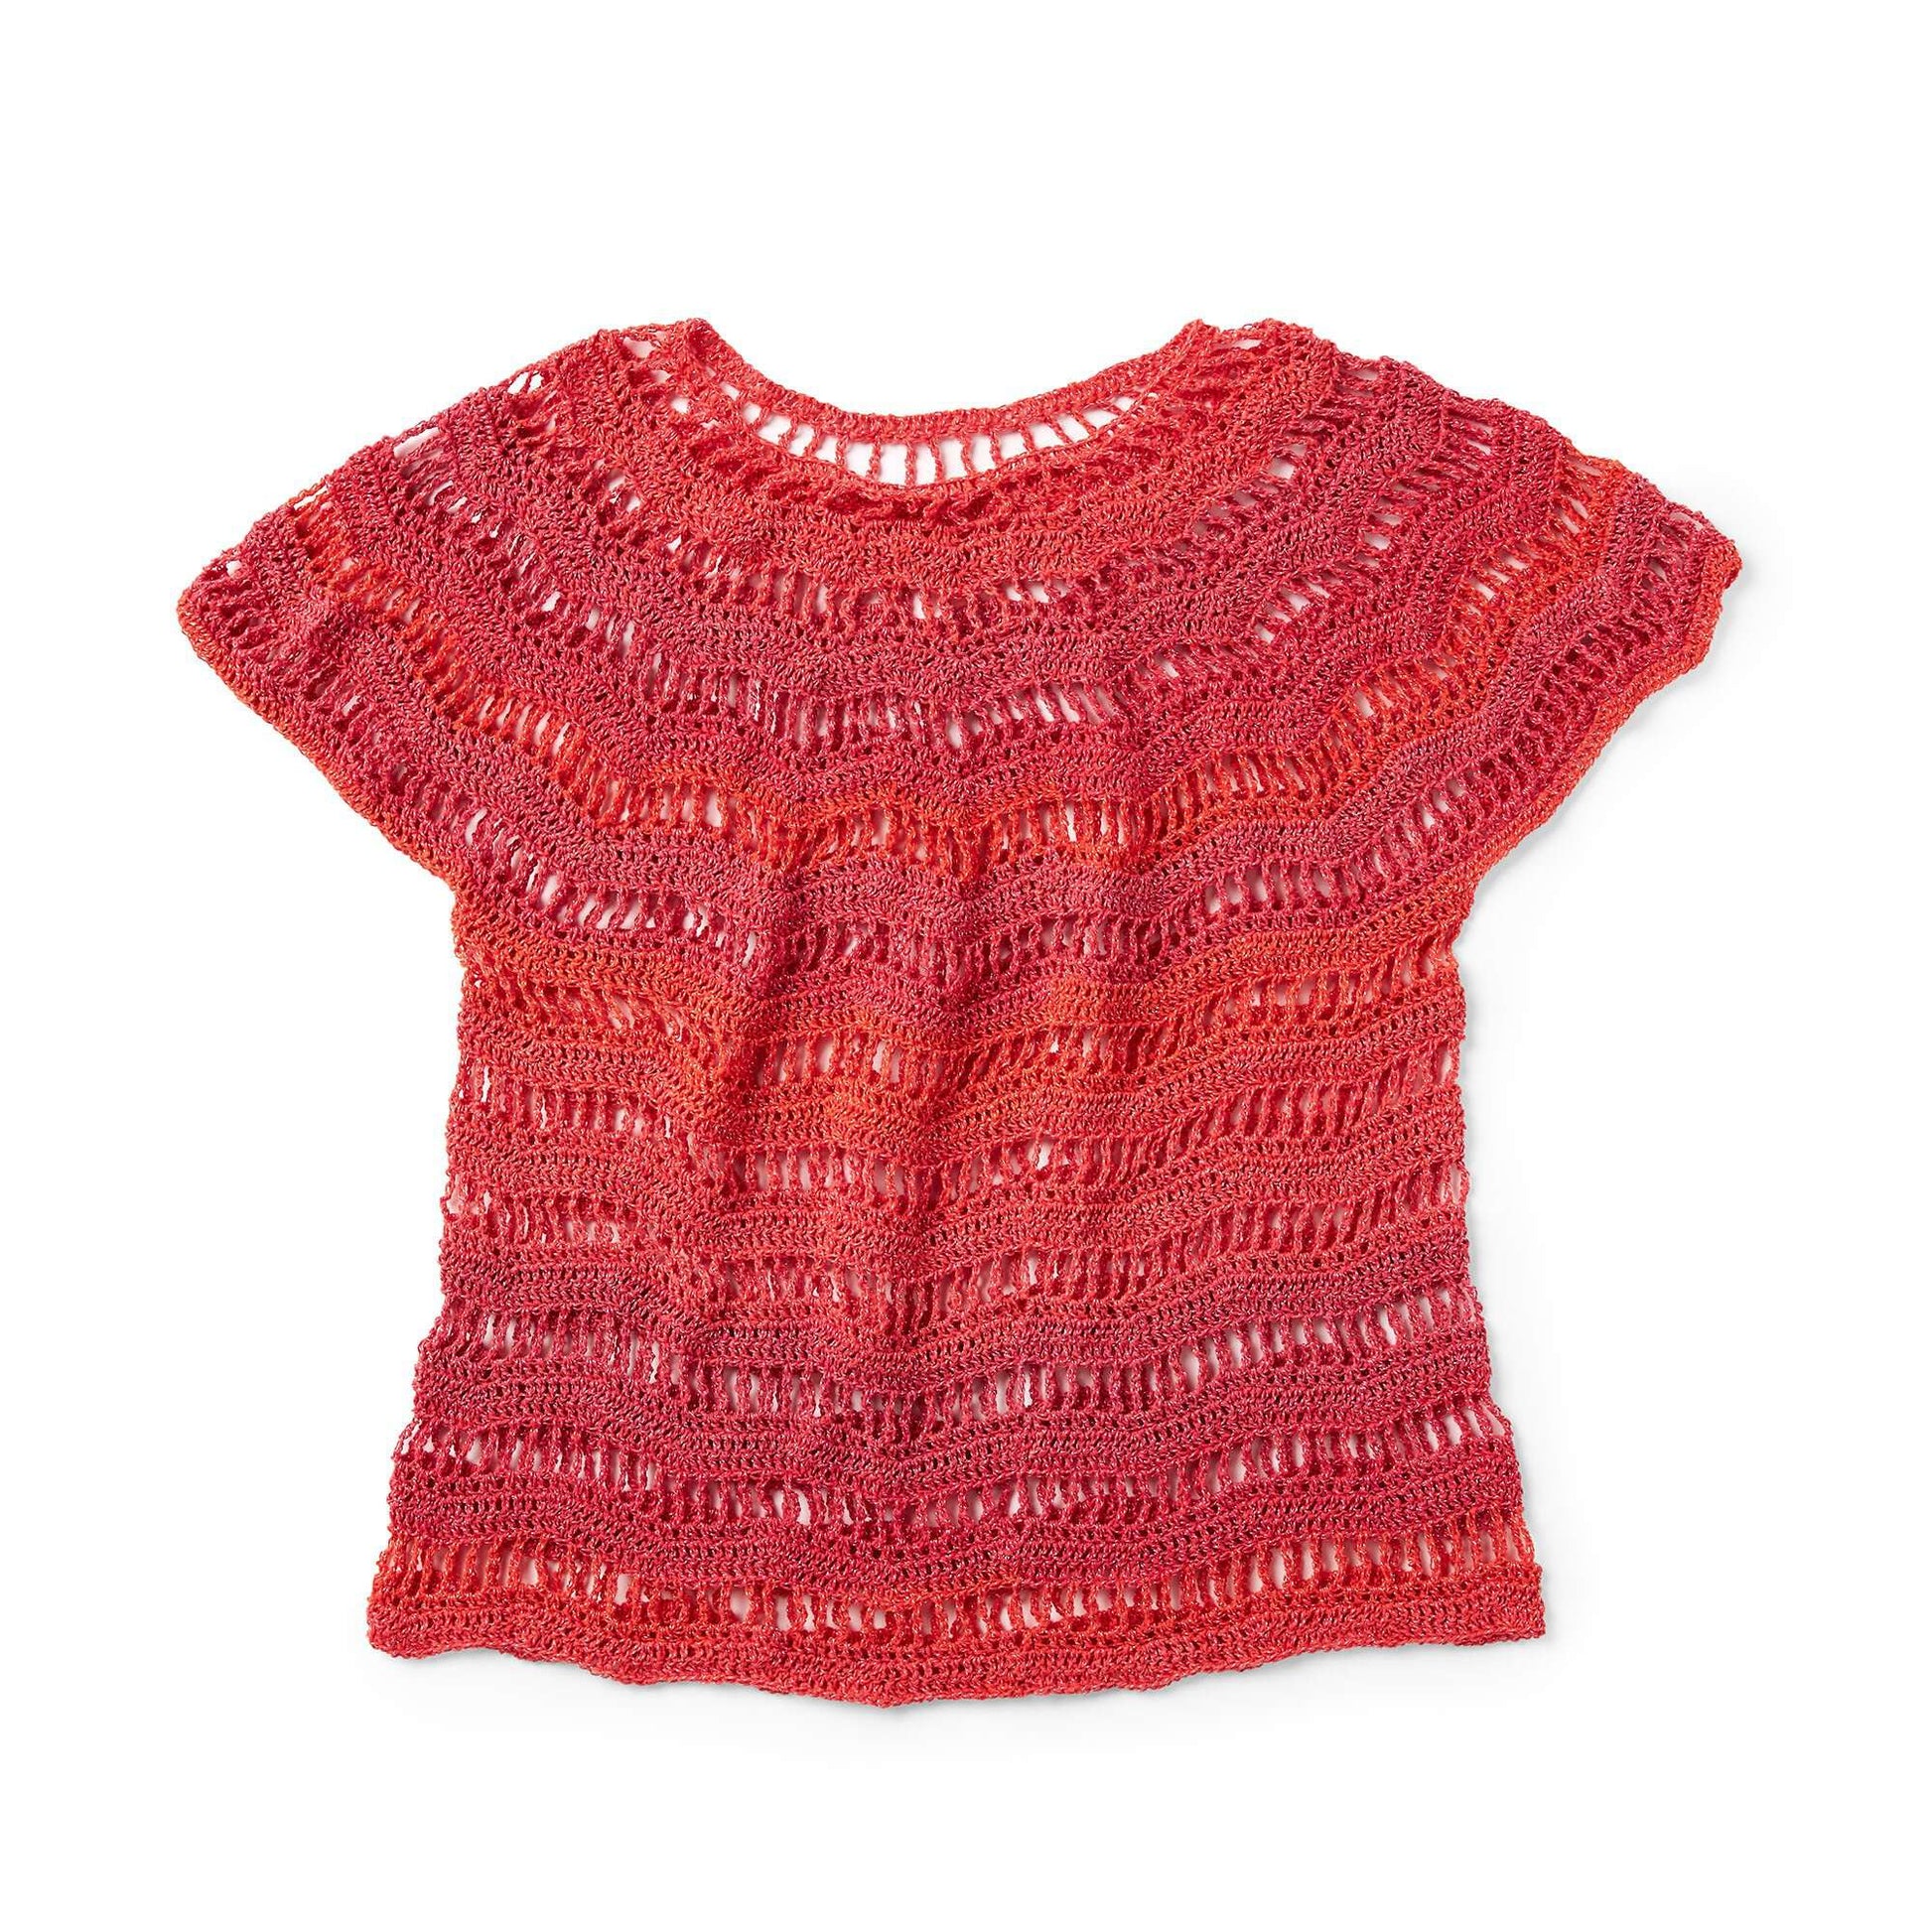 Free Red Heart Zig Zag Crochet Top Pattern